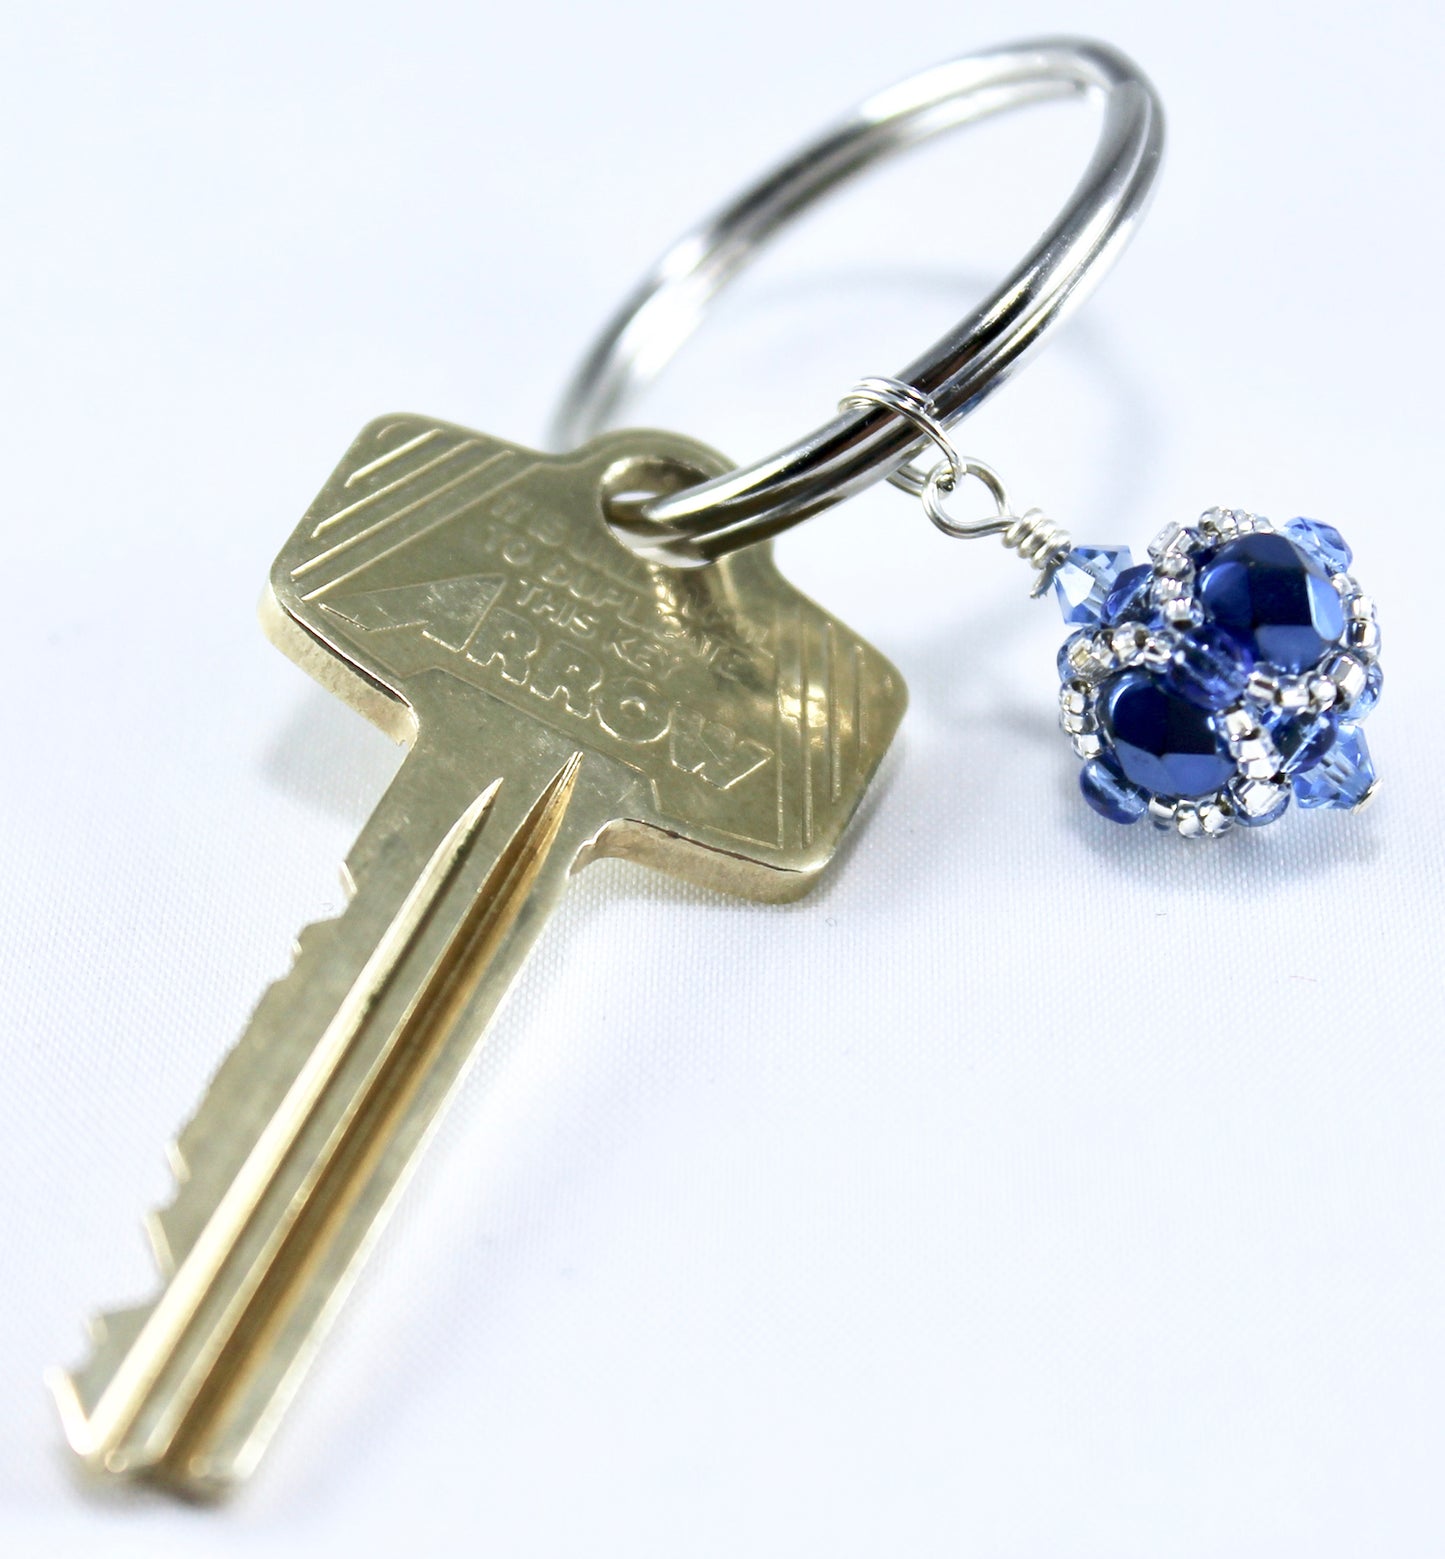 Blue & Silver Key Chain (Penn State University)